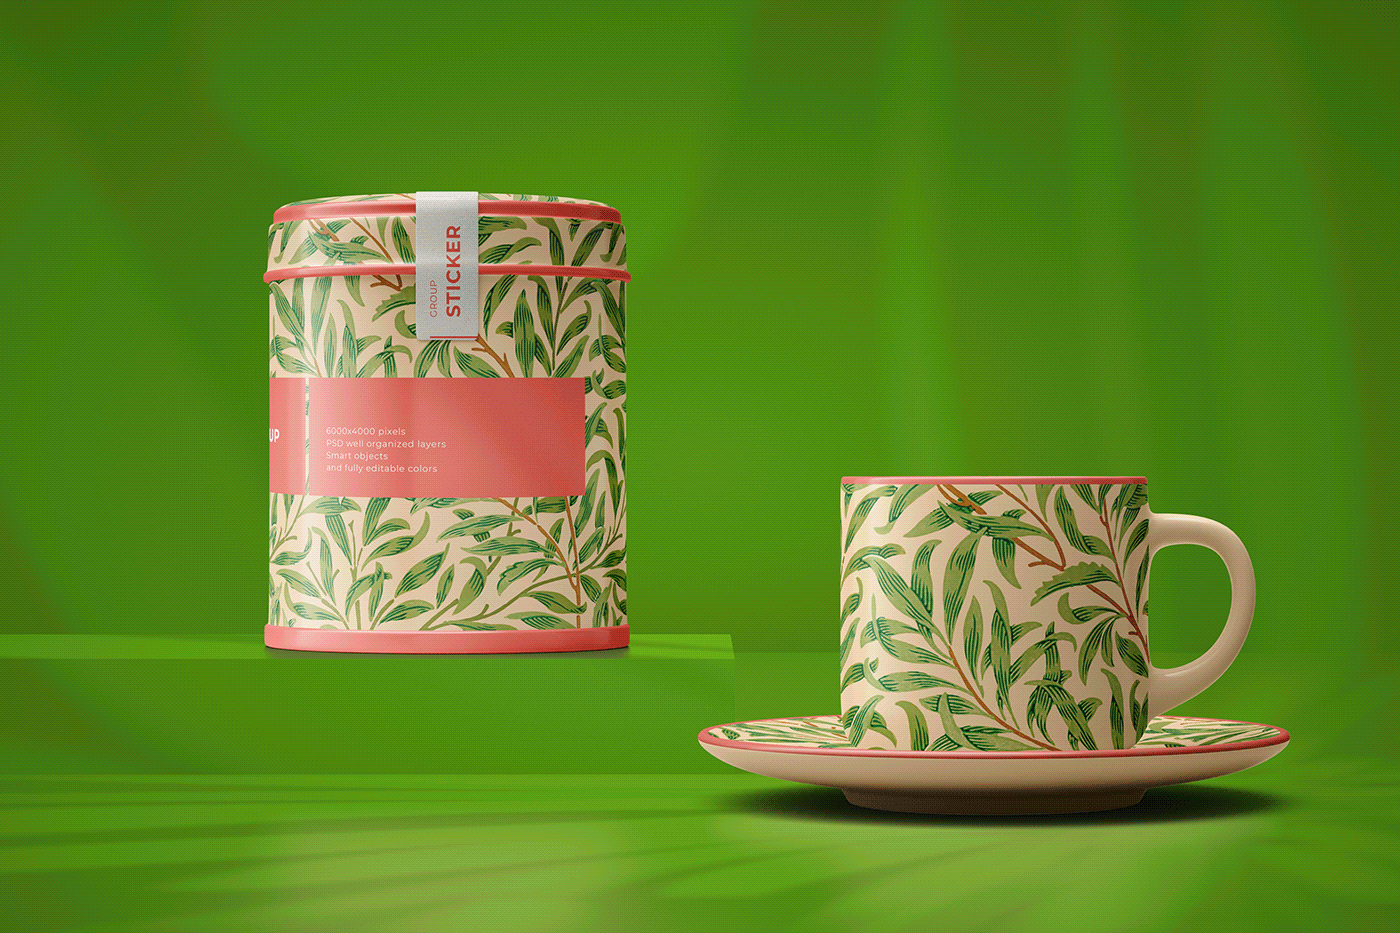 ceramic cup mock-up Mockup saucer set smart object tea teapot tin